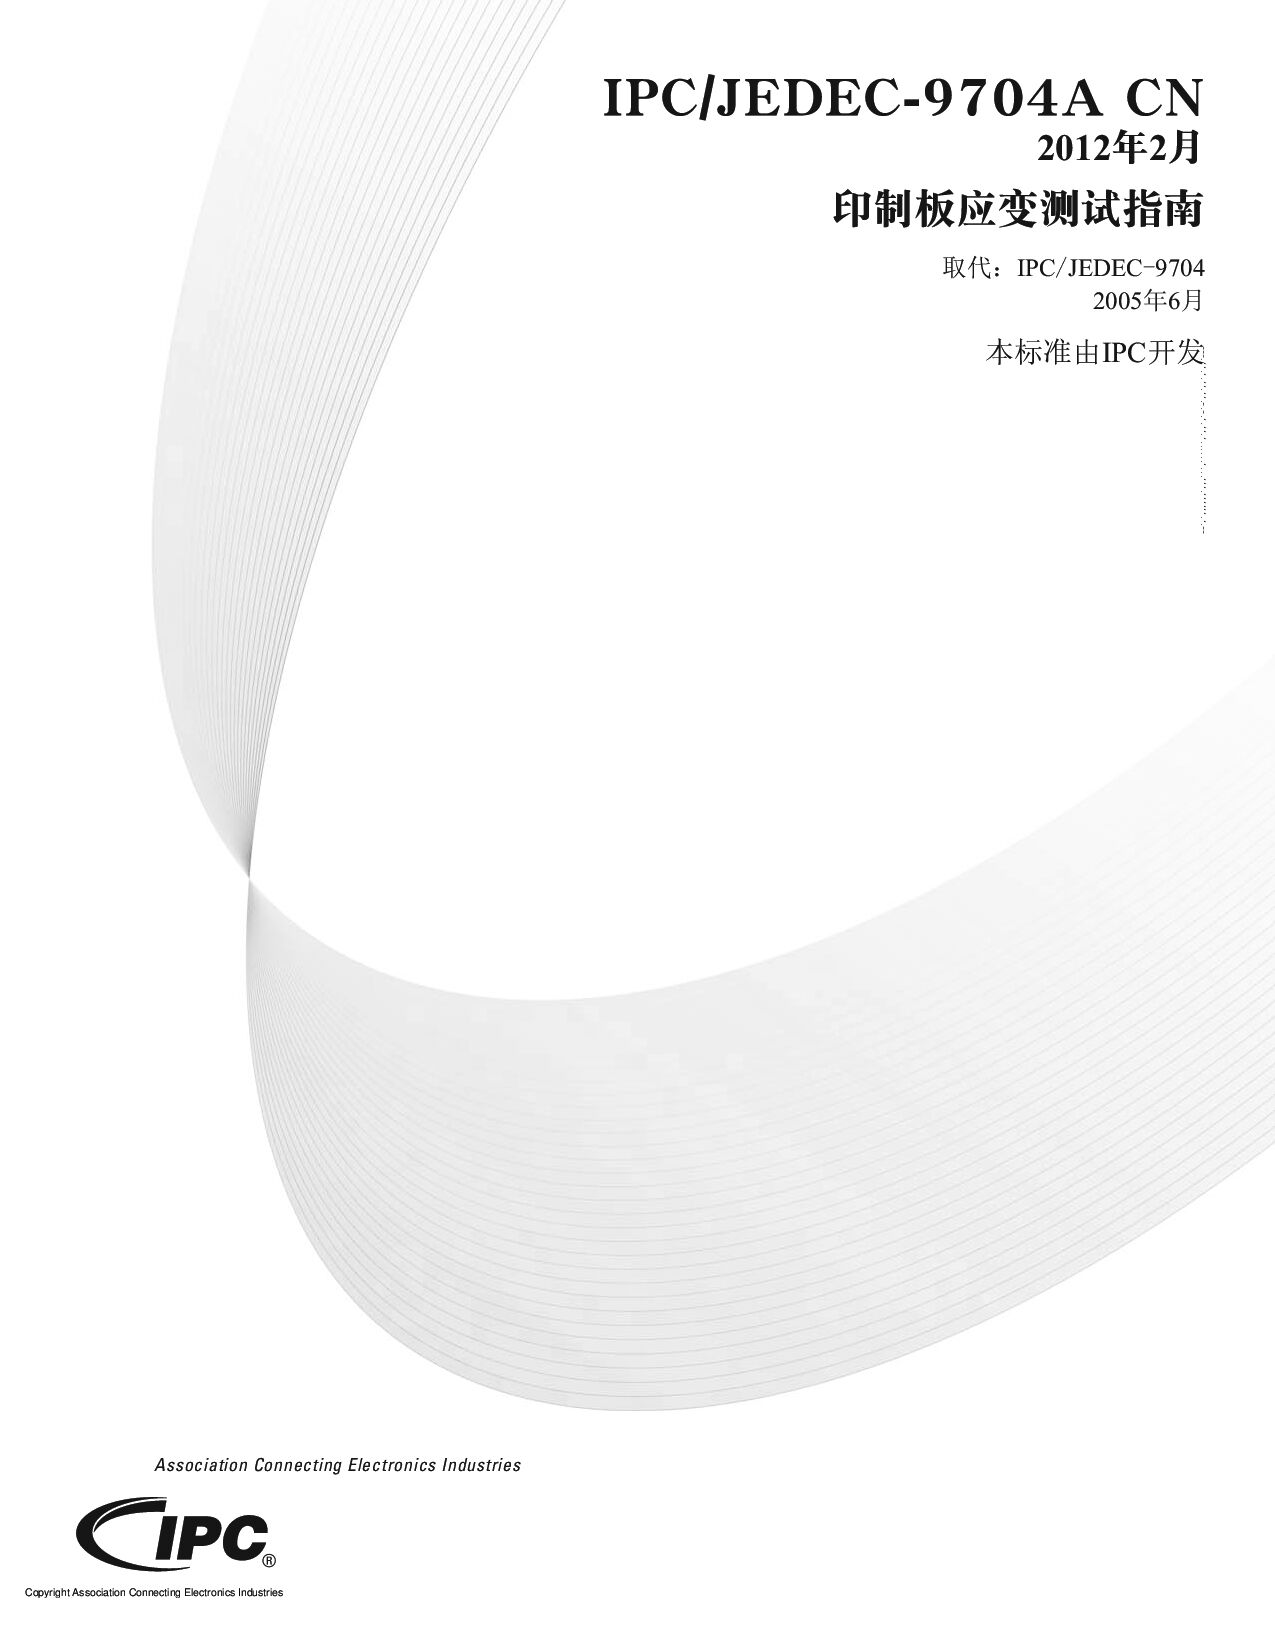 IPC JEDEC-9704A CHINESE封面图